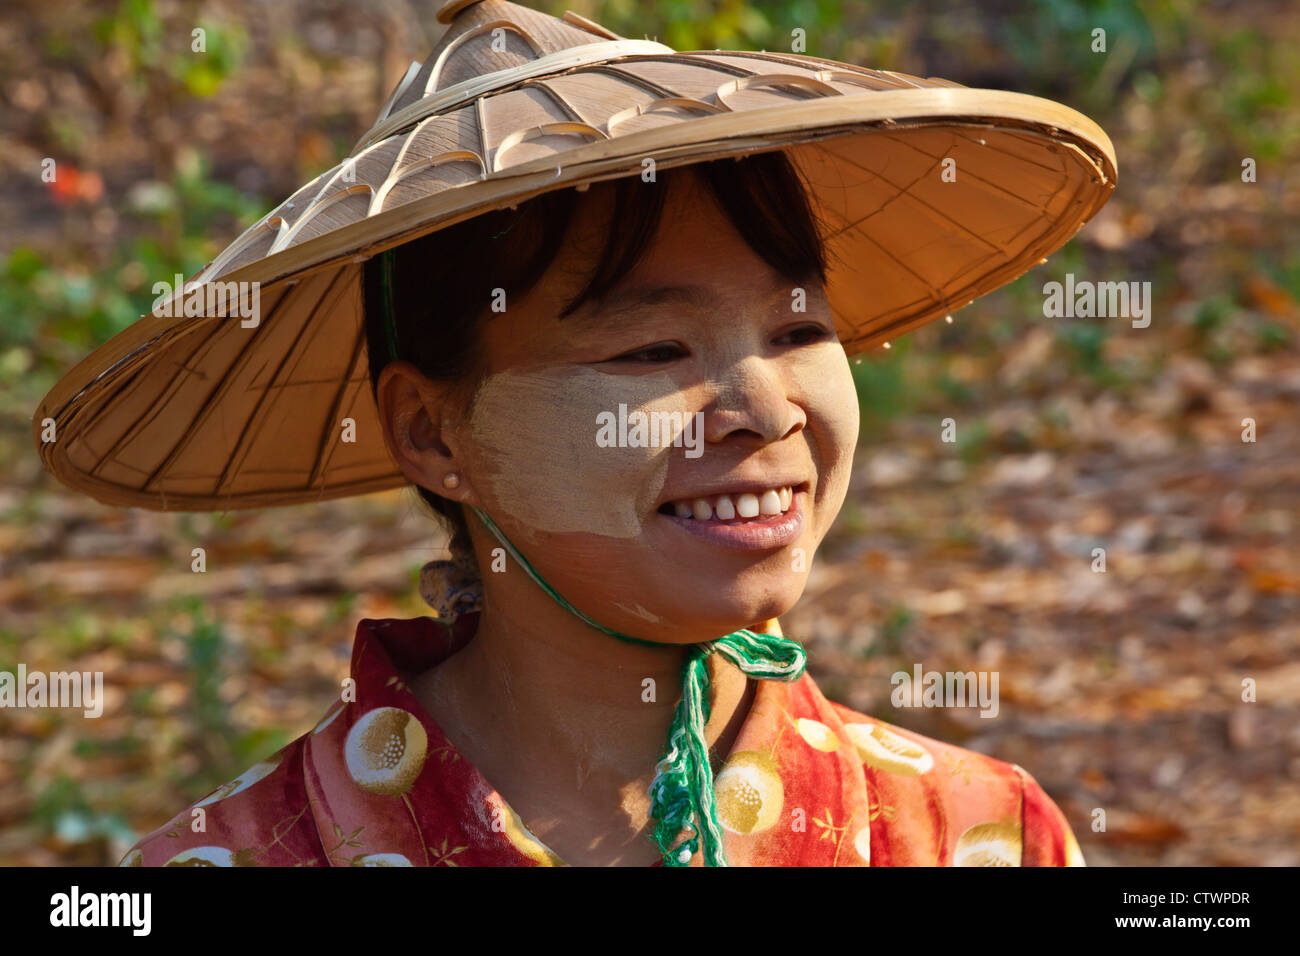 Femme birmane en route vers le village de HASPRES THAUK pour le marché hebdomadaire - Lac Inle, MYANMAR Banque D'Images